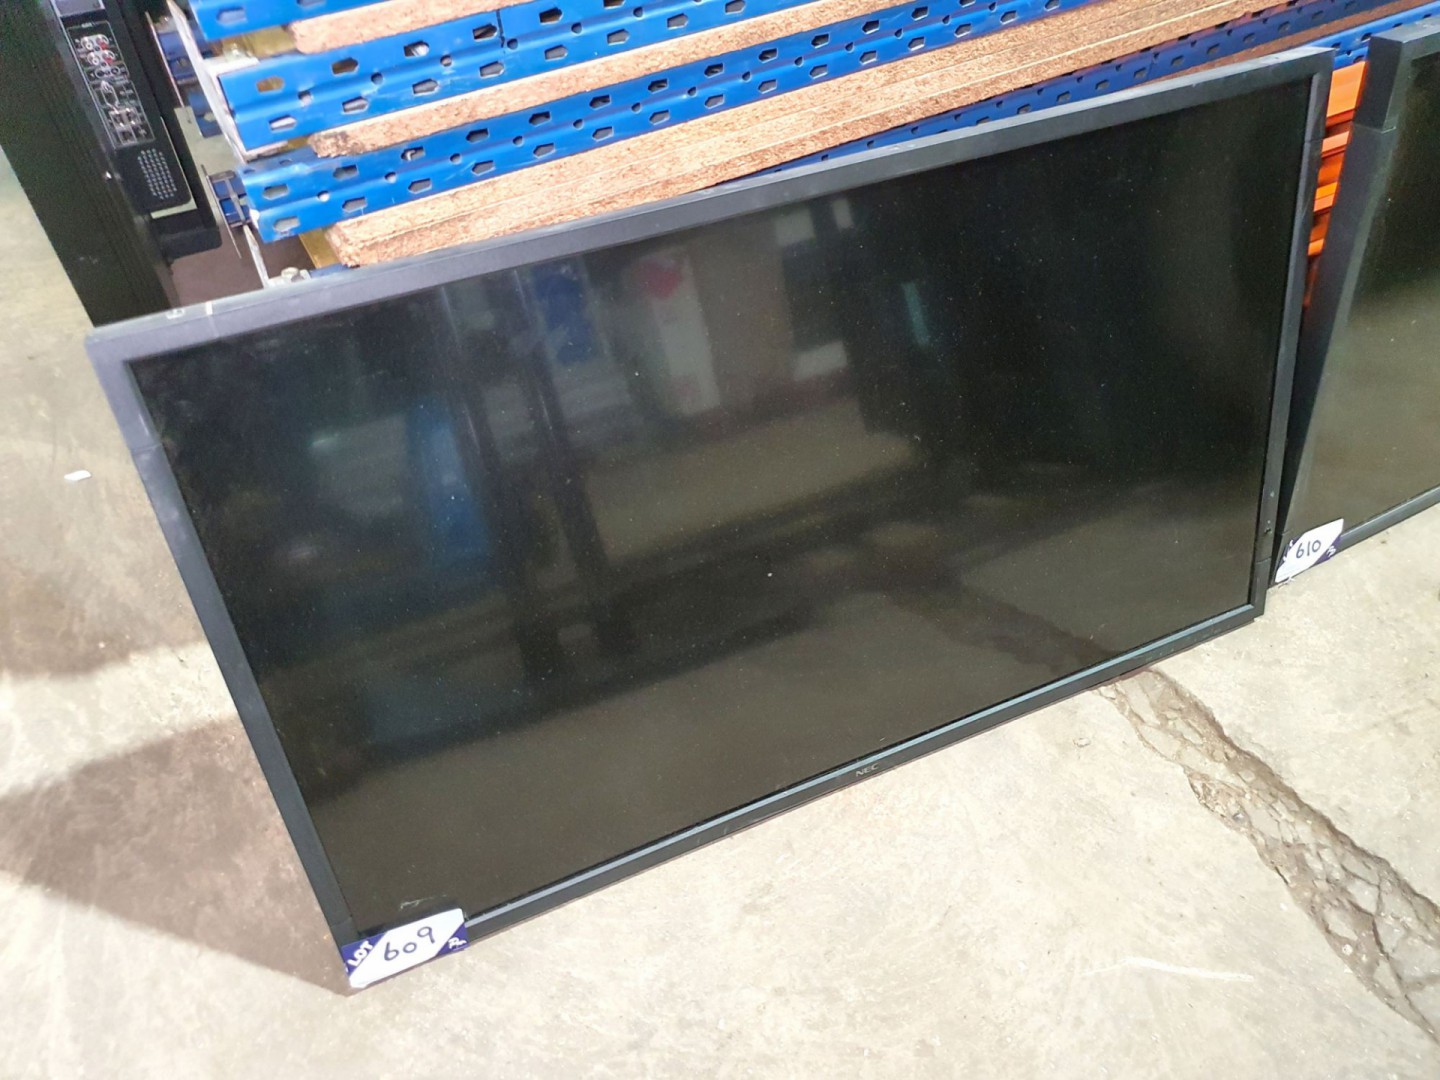 NEC Multisync V423 LCD monitor